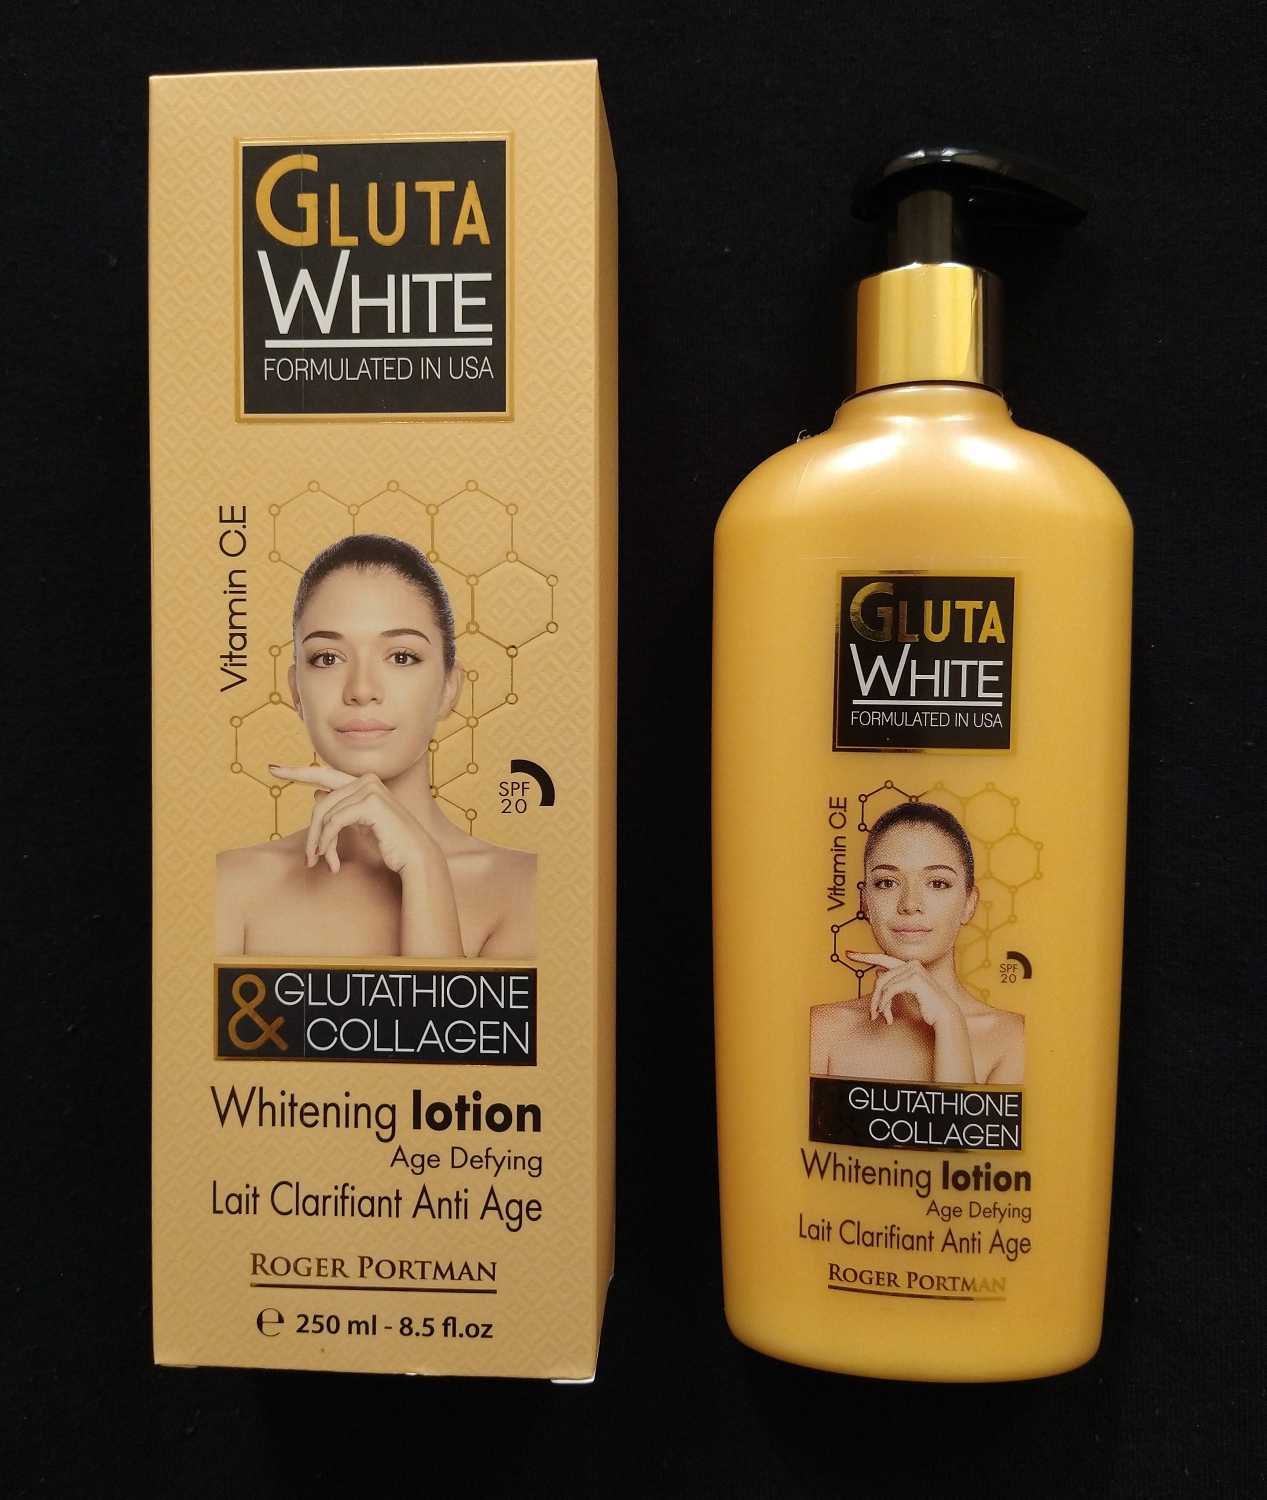 Gluta White Glutathione & Collagen Whitening Body Lotion